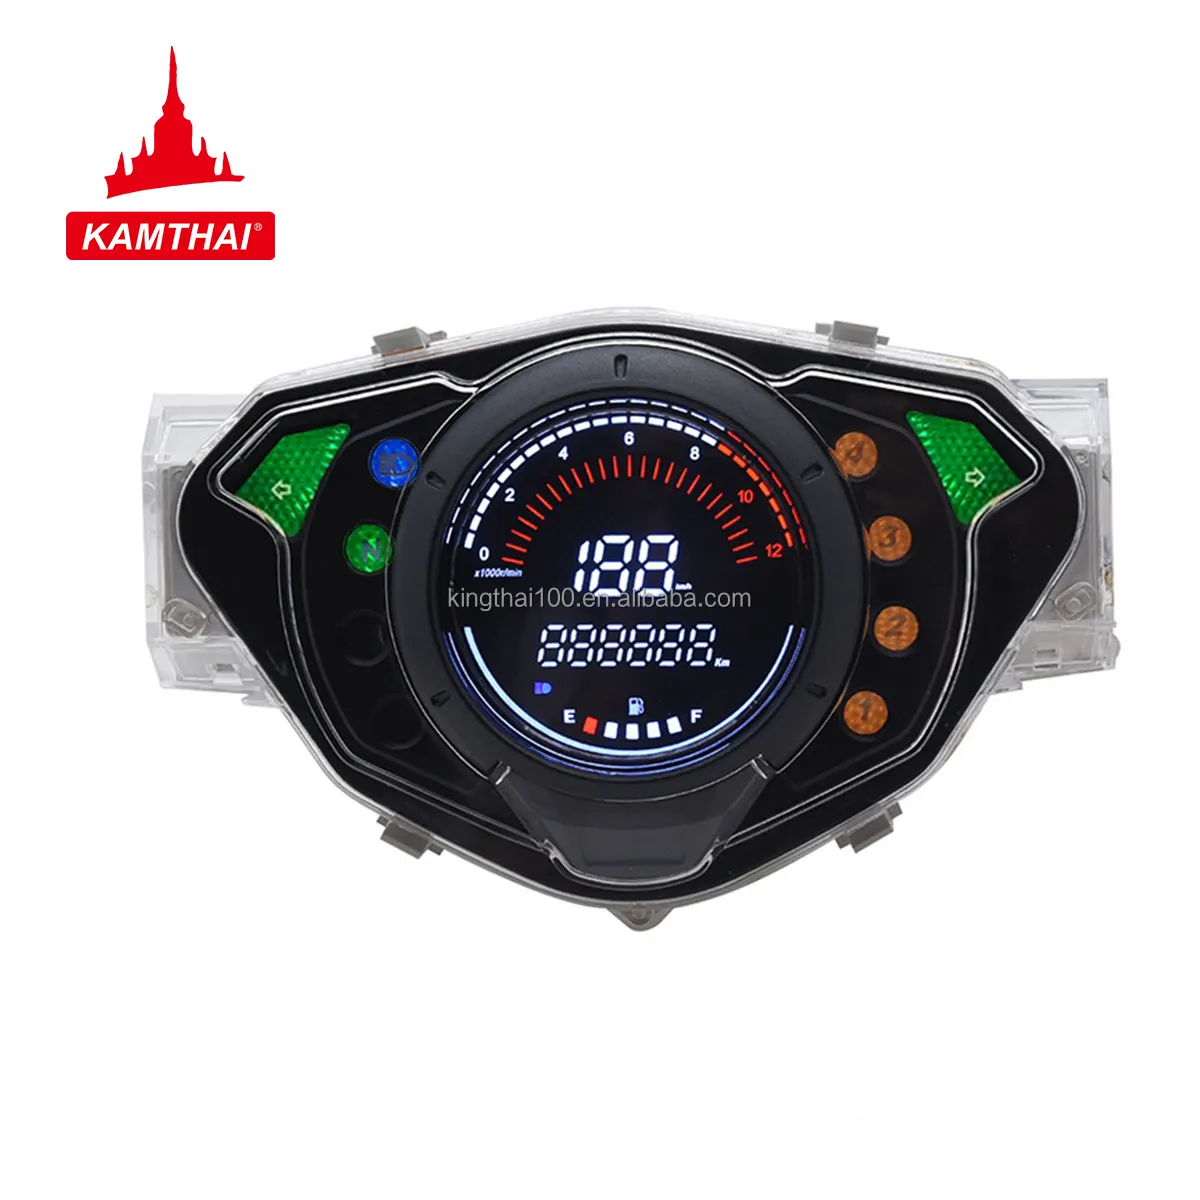 KAMTHAI WAVE 125 s Speedometer sepeda motor, Speedometer Digital Universal untuk Honda Wave 125 speedometer